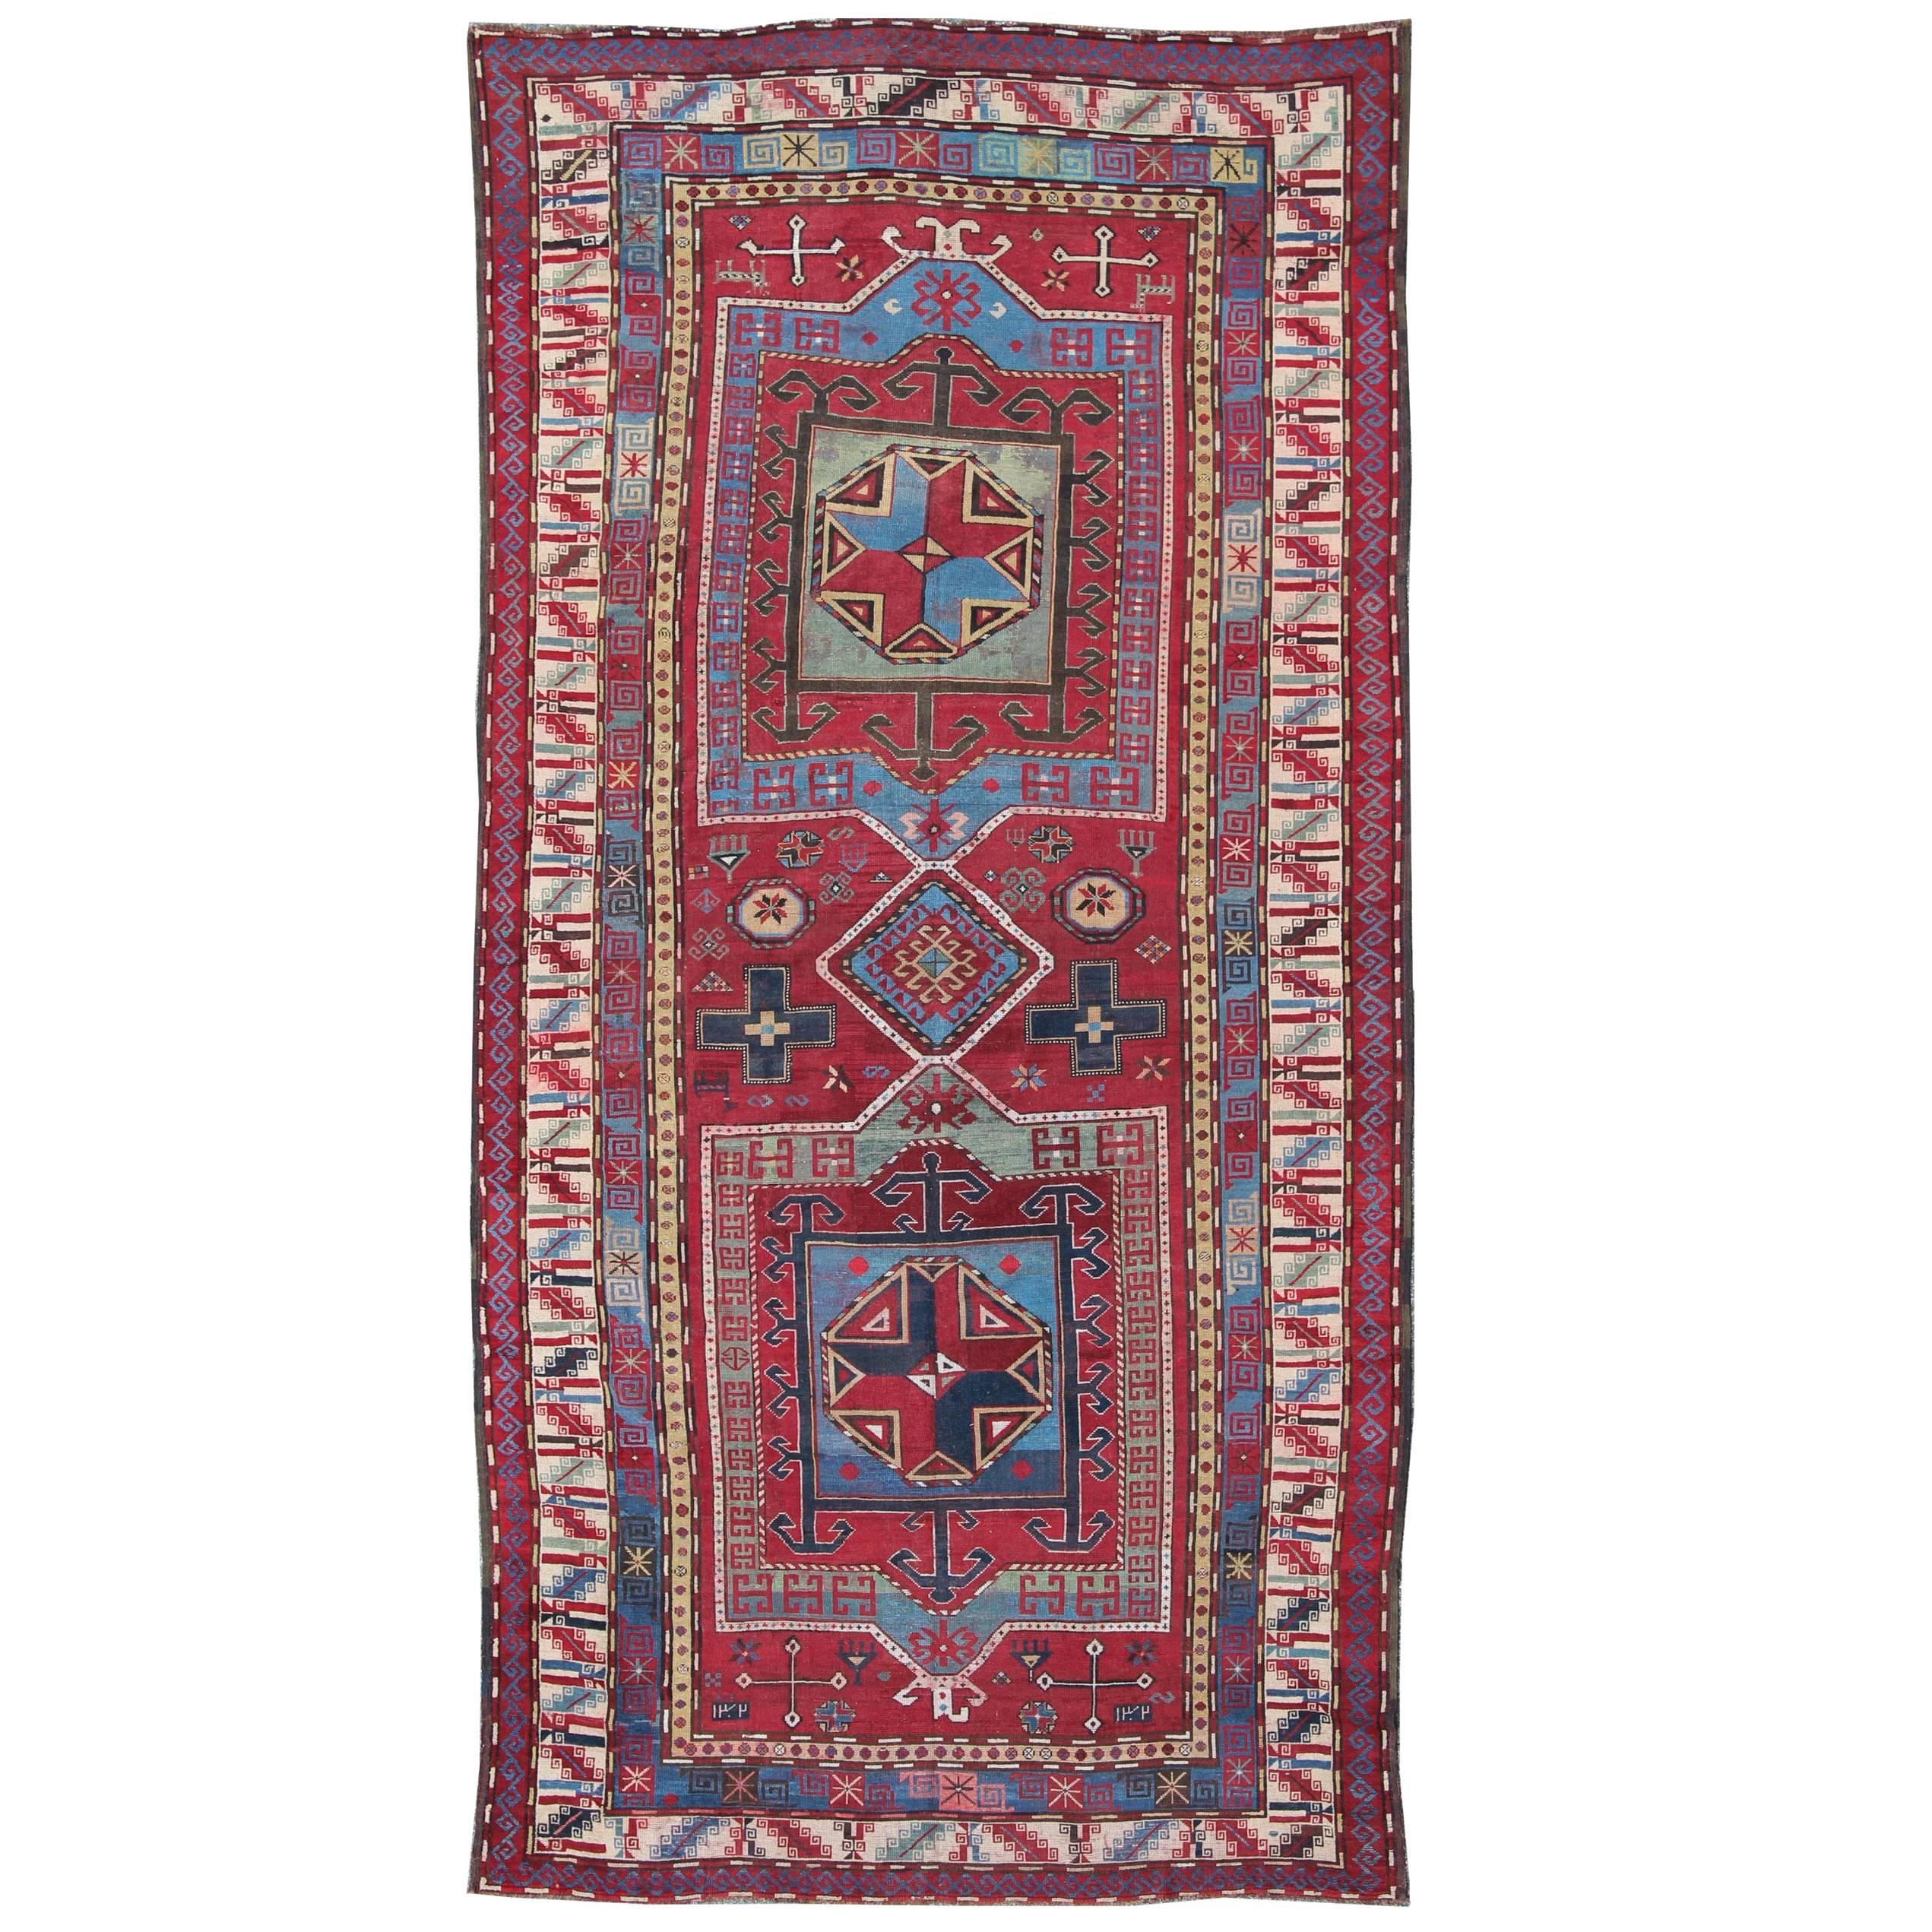 19th Century Antique Caucasus Kazak Gallery Carpet With Dual Geometric Medallion